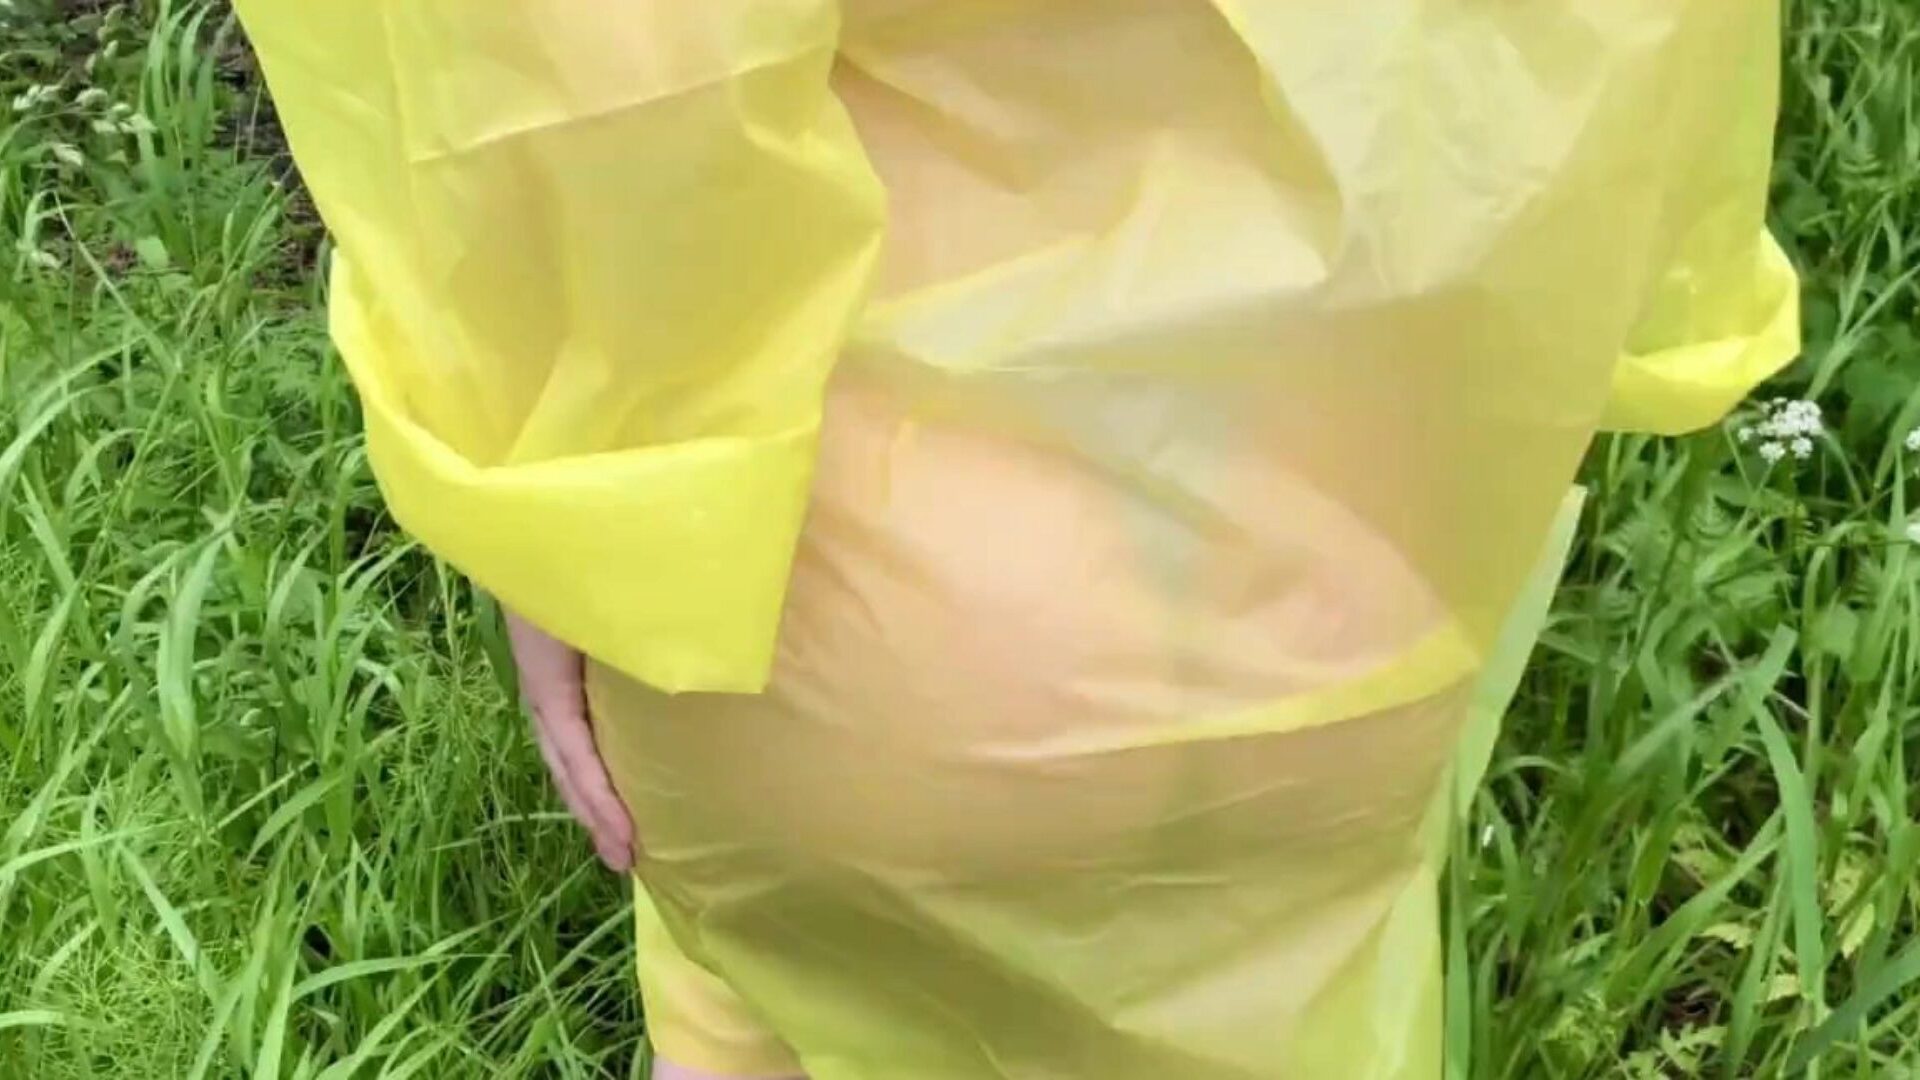 dziewczyna w płaszczu przeciwdeszczowym zostaje zerżnięta w lesie po deszczu